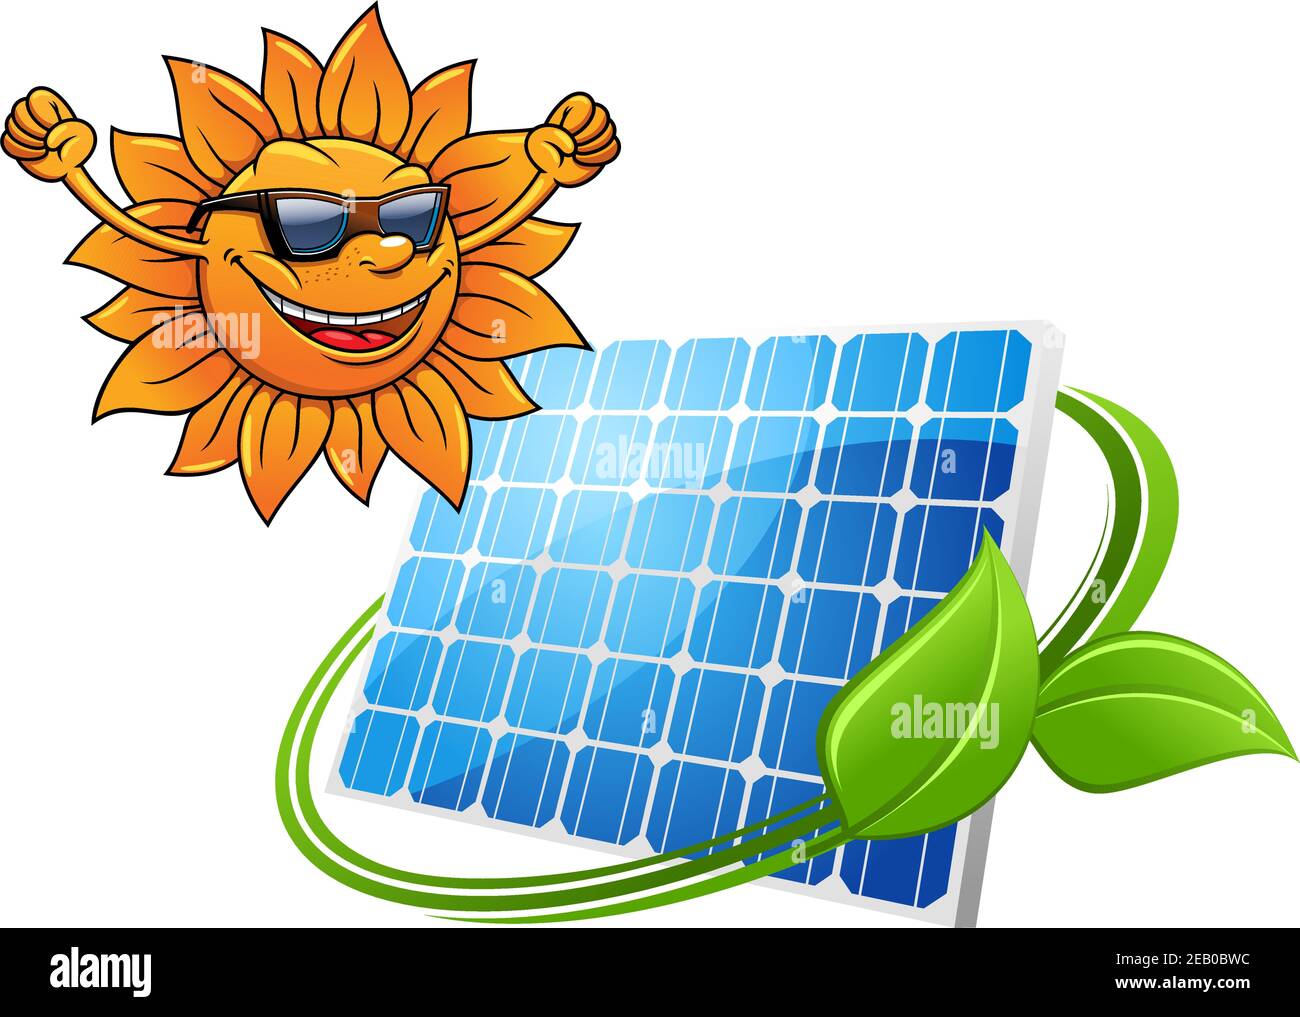 Notizbuch: Solar Sonnenstrom Solarstrom Photovoltaik Ökostrom Fotovoltaik  Erneuerbare Alternative Grüne Energien Sonne Strom, Lustiges Niedliches   Linien